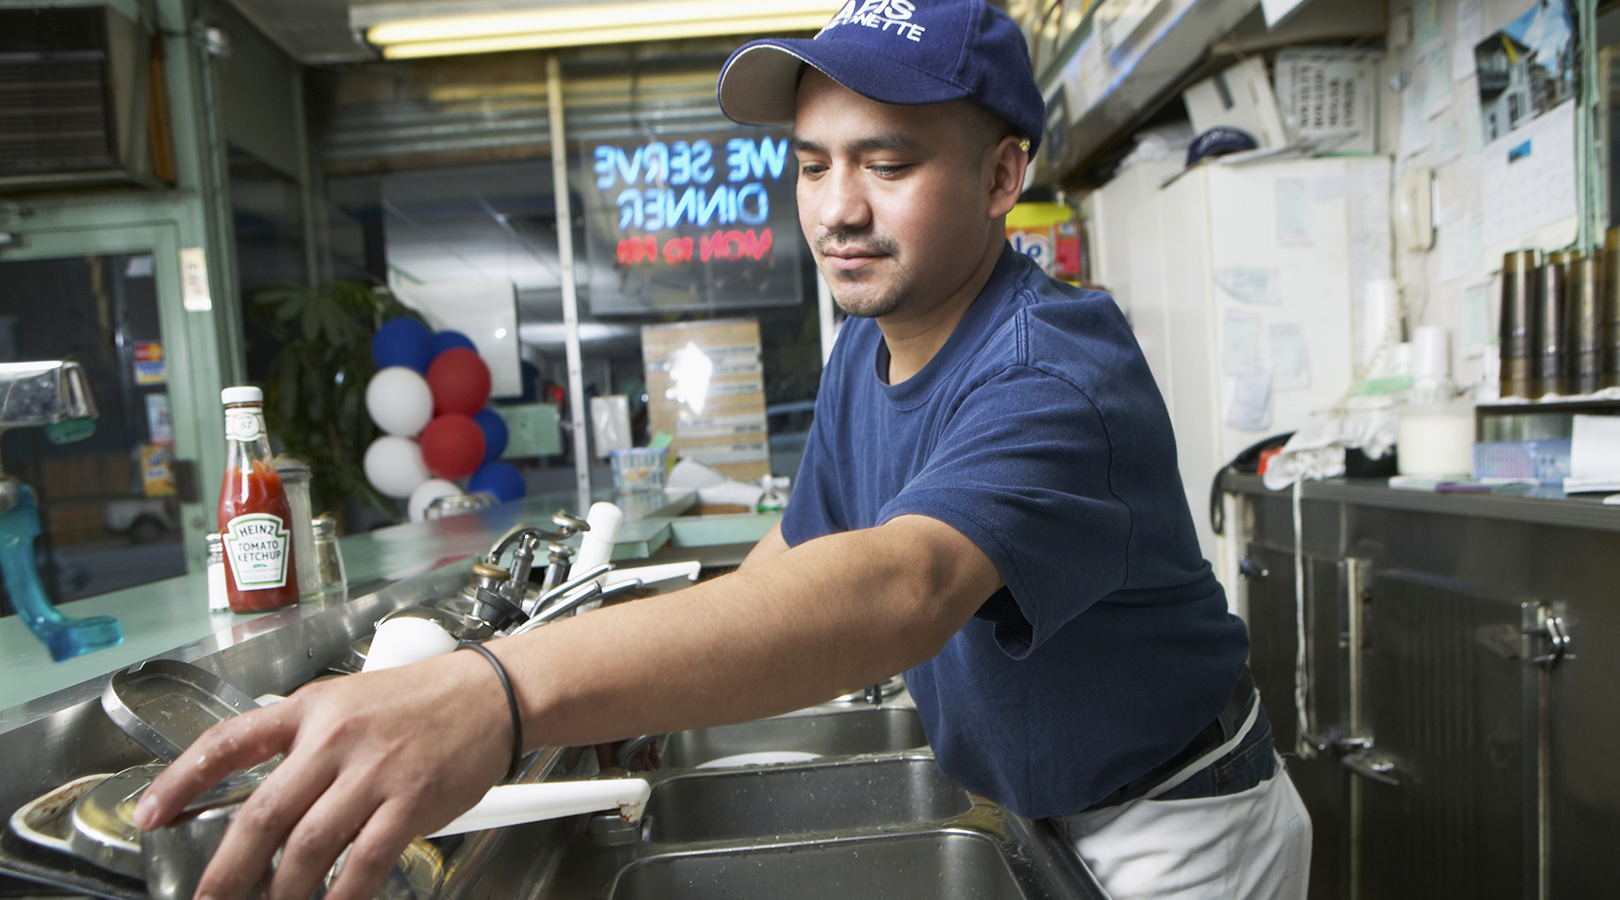 Un hombre lavando platos detrás del mostrador de una cafetería